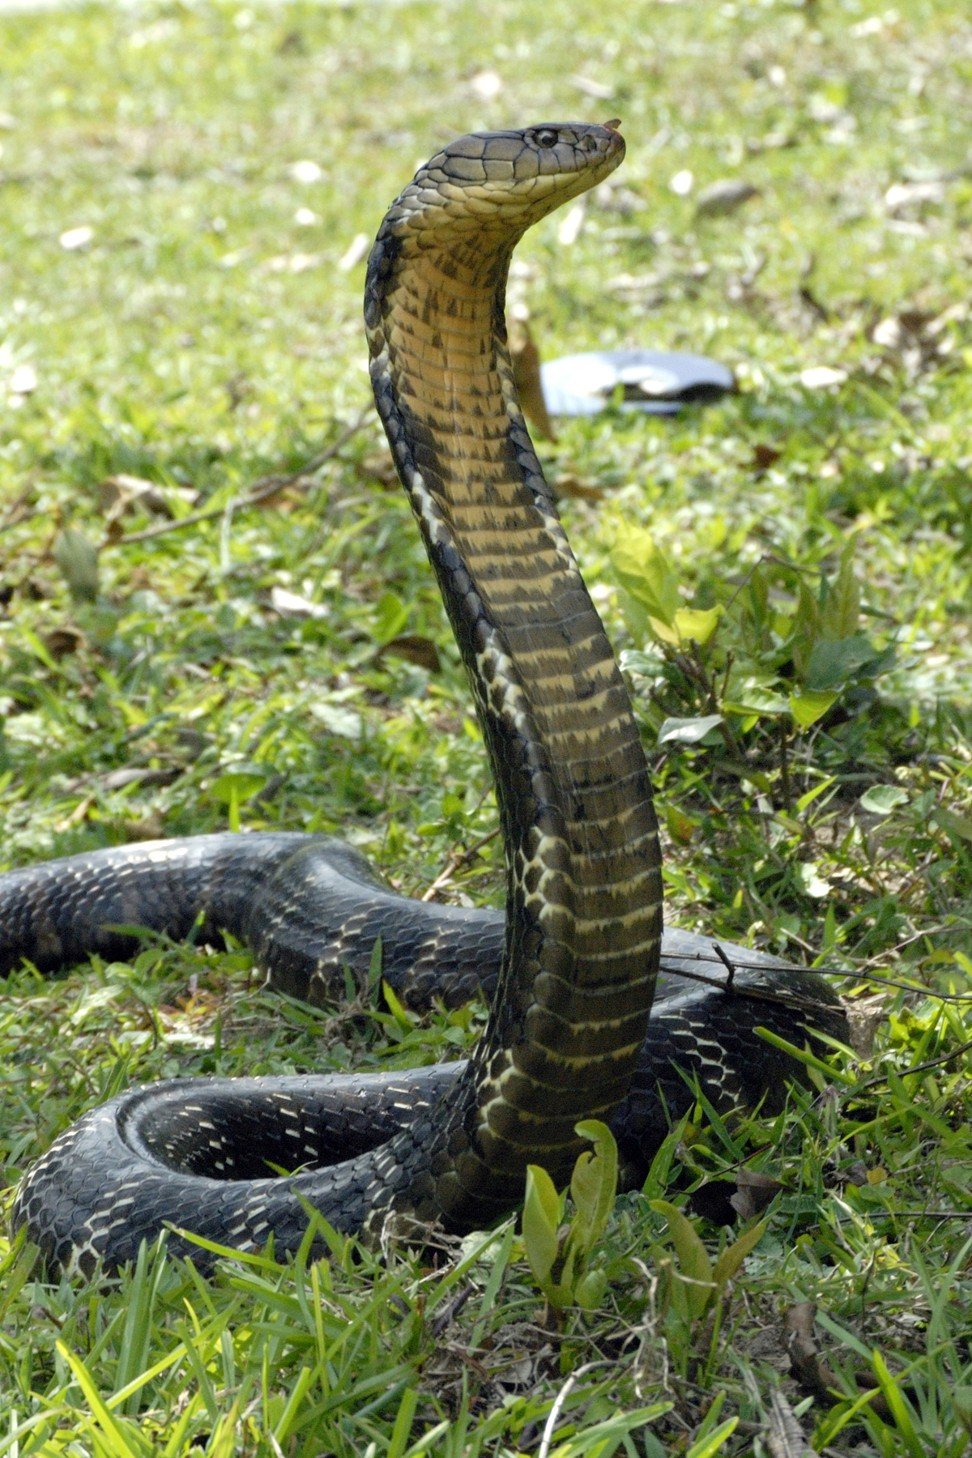 A king cobra at Pak Sha O in Sai Kung.